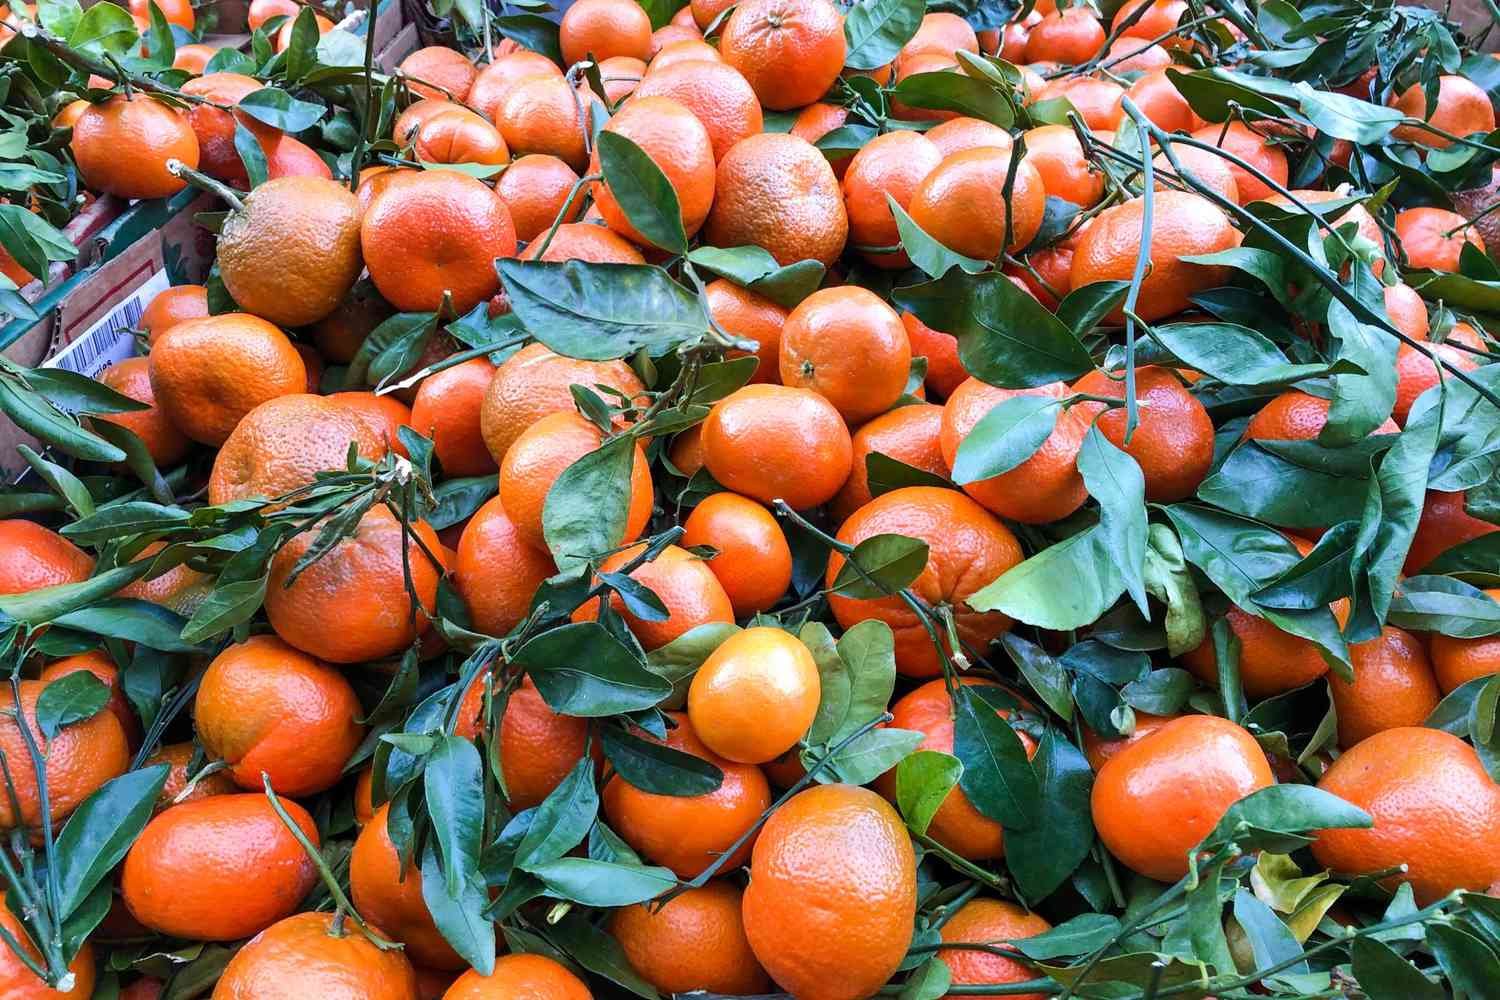 Mandarin oranges in pile